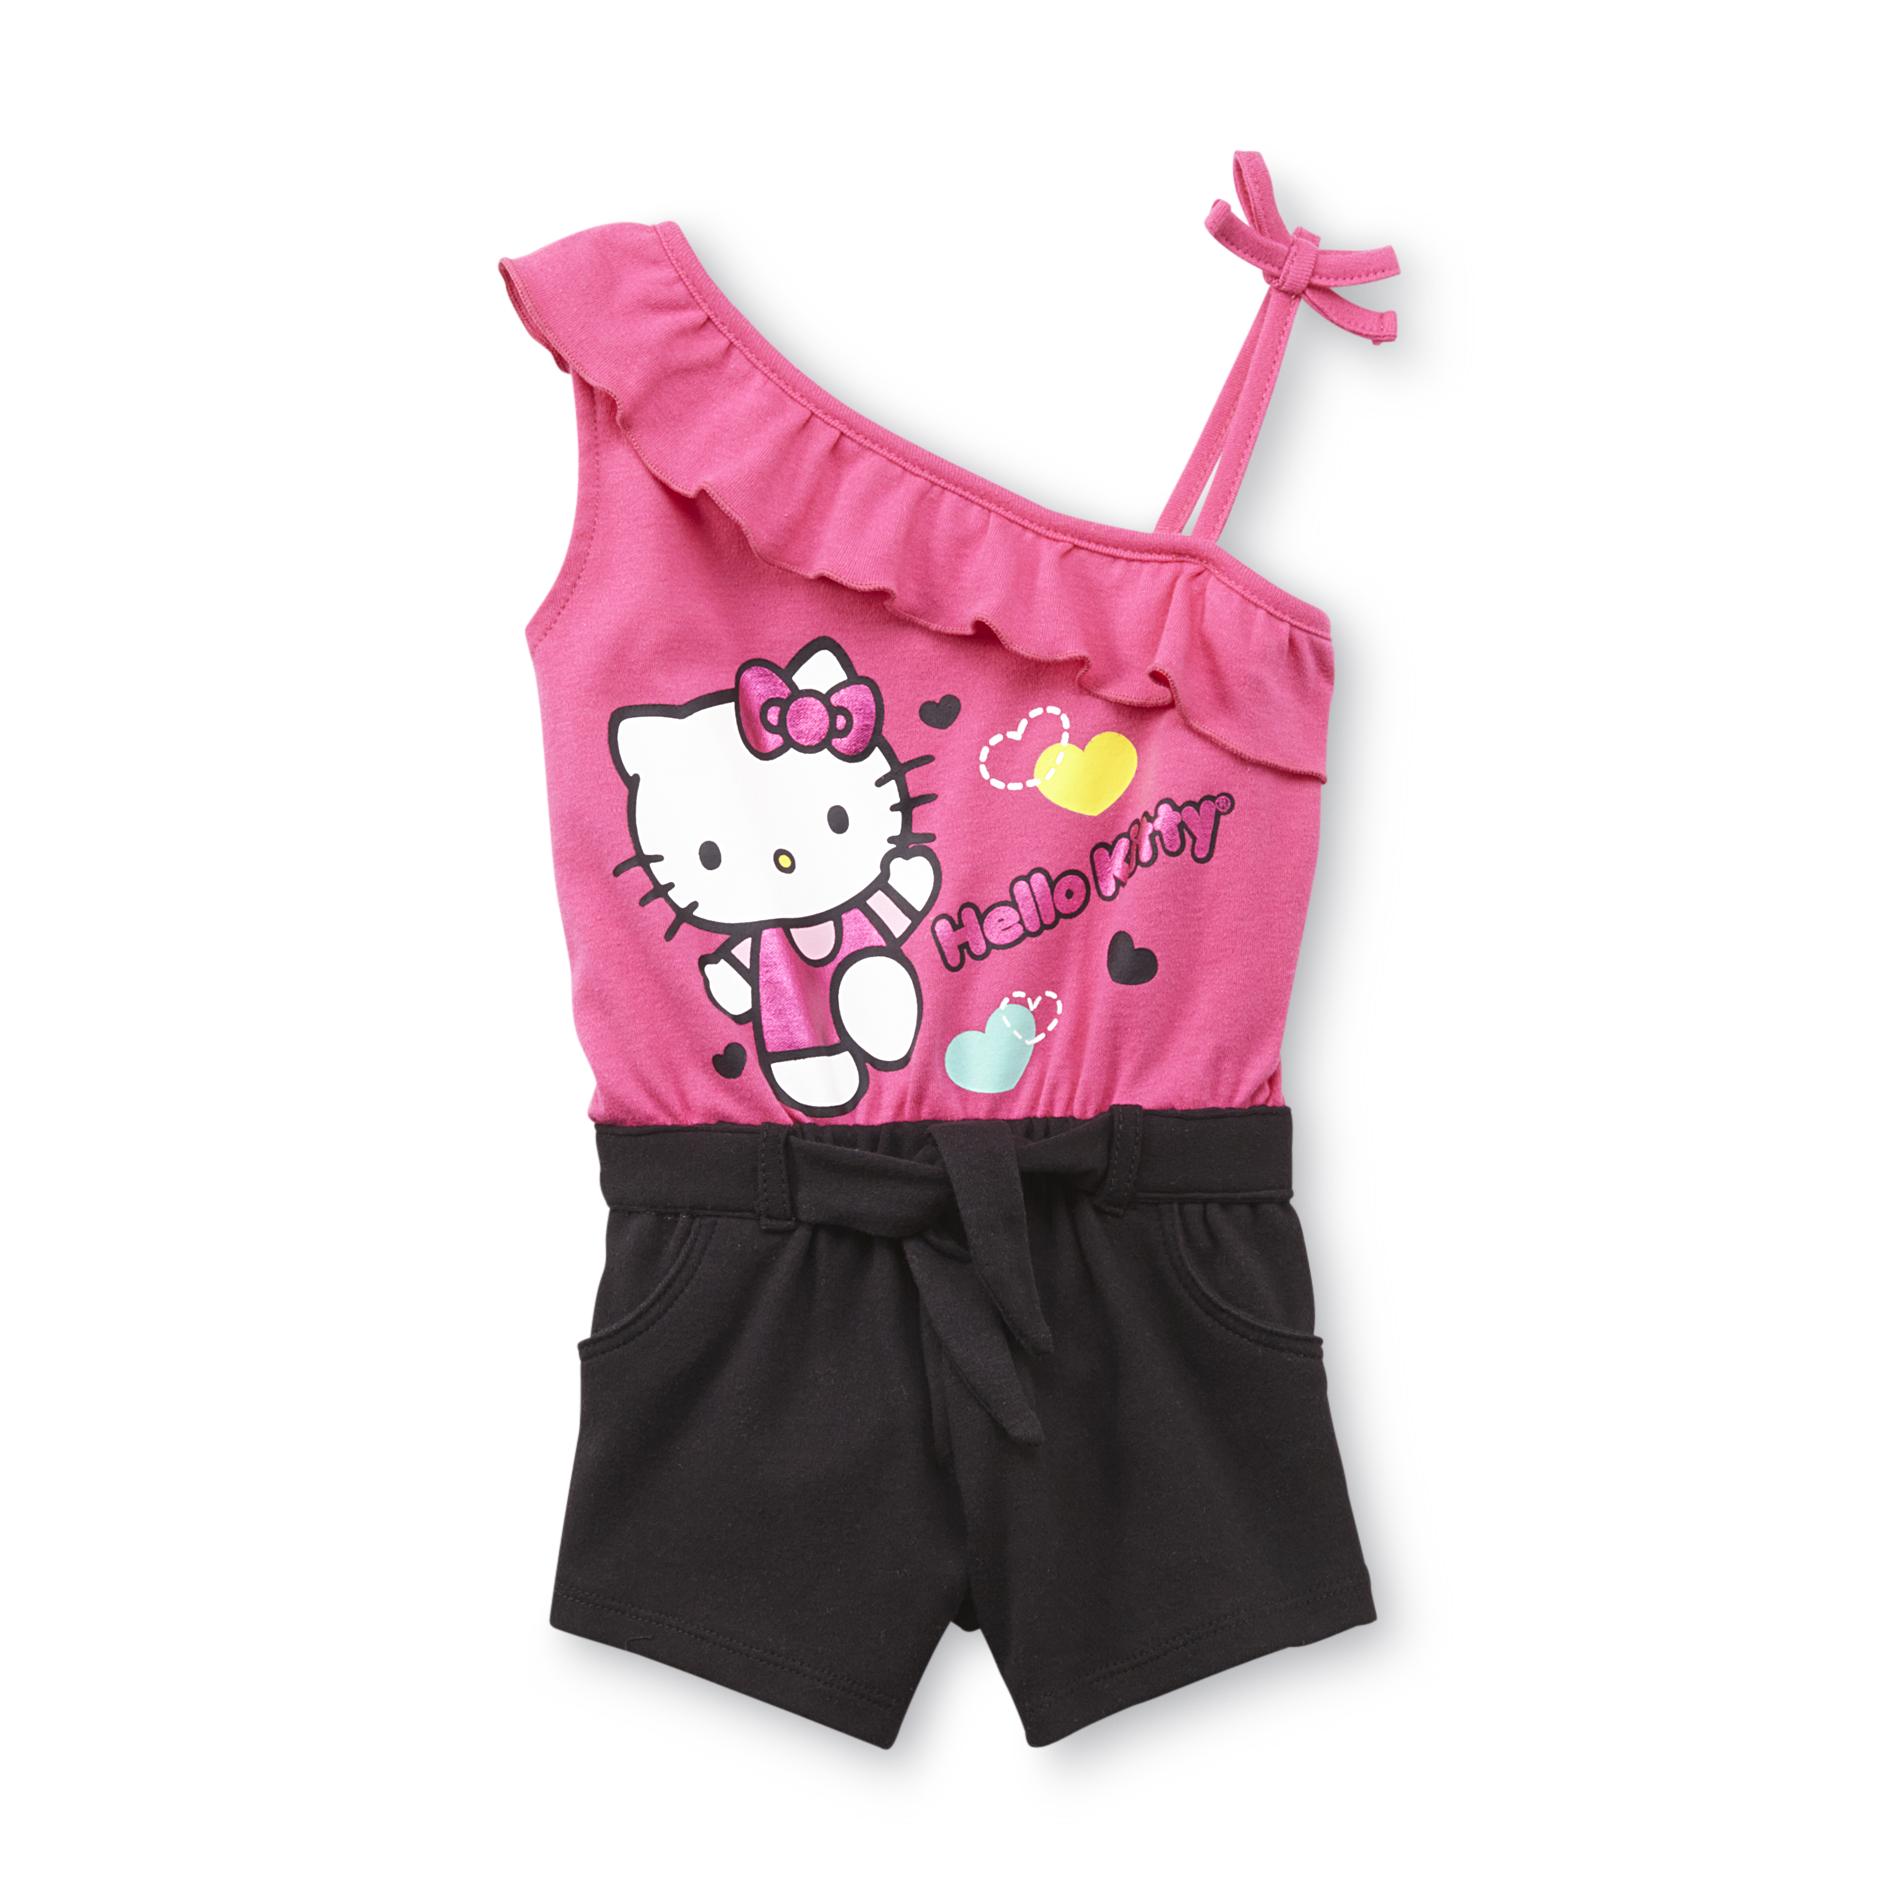 Hello Kitty Infant & Toddler Girl's Romper